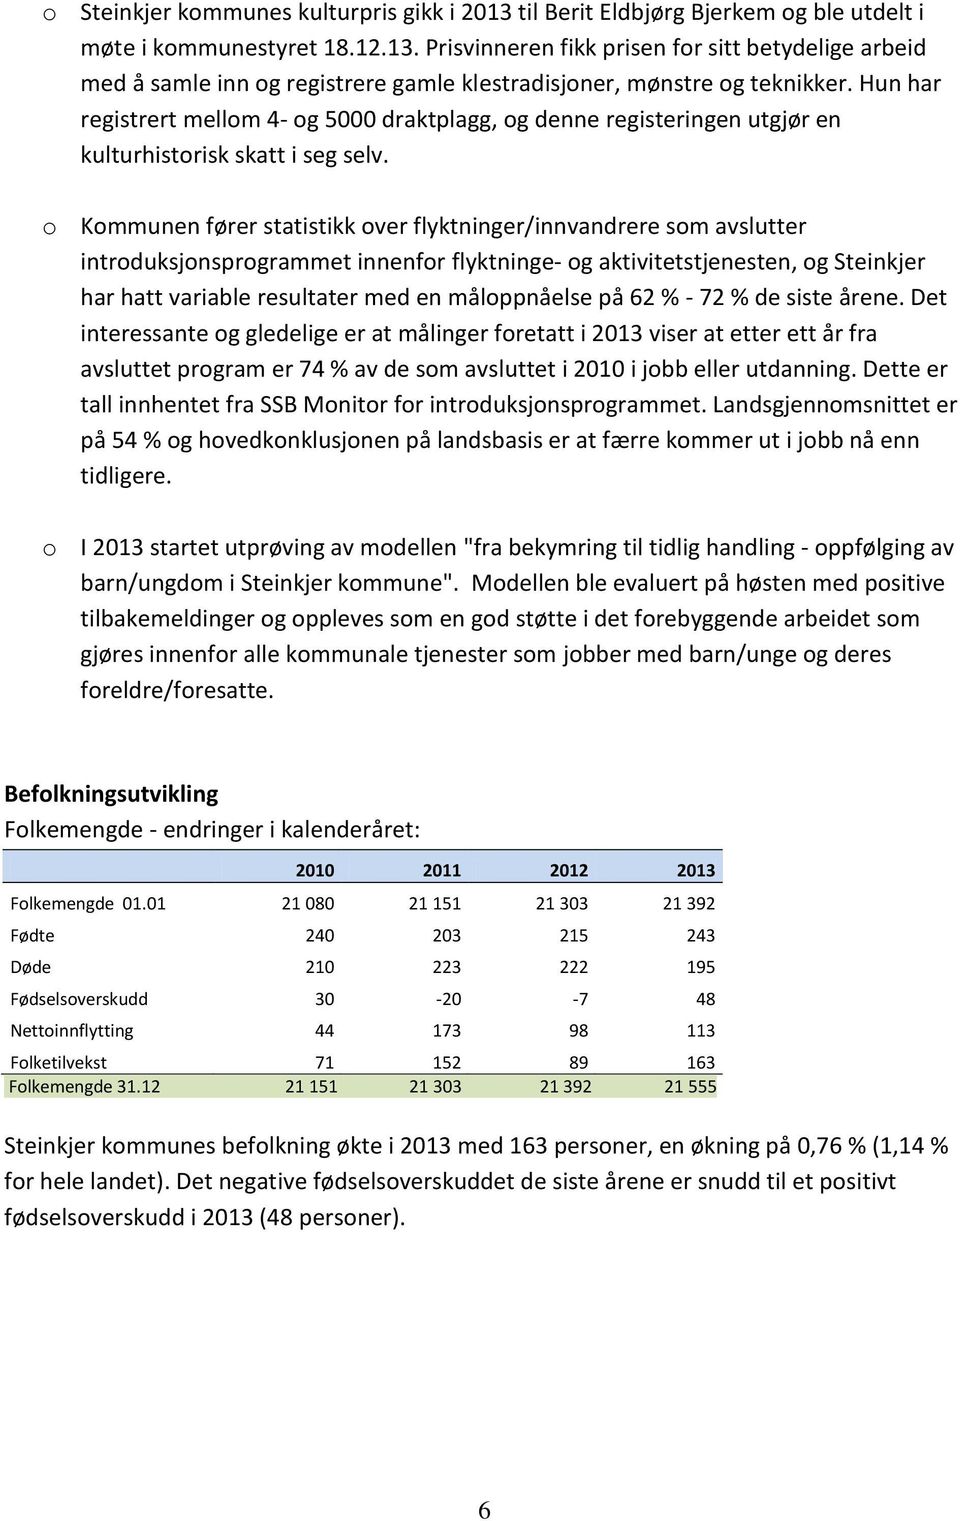 o Kommunen fører statistikk over flyktninger/innvandrere som avslutter introduksjonsprogrammet innenfor flyktninge- og aktivitetstjenesten, og Steinkjer har hatt variable resultater med en